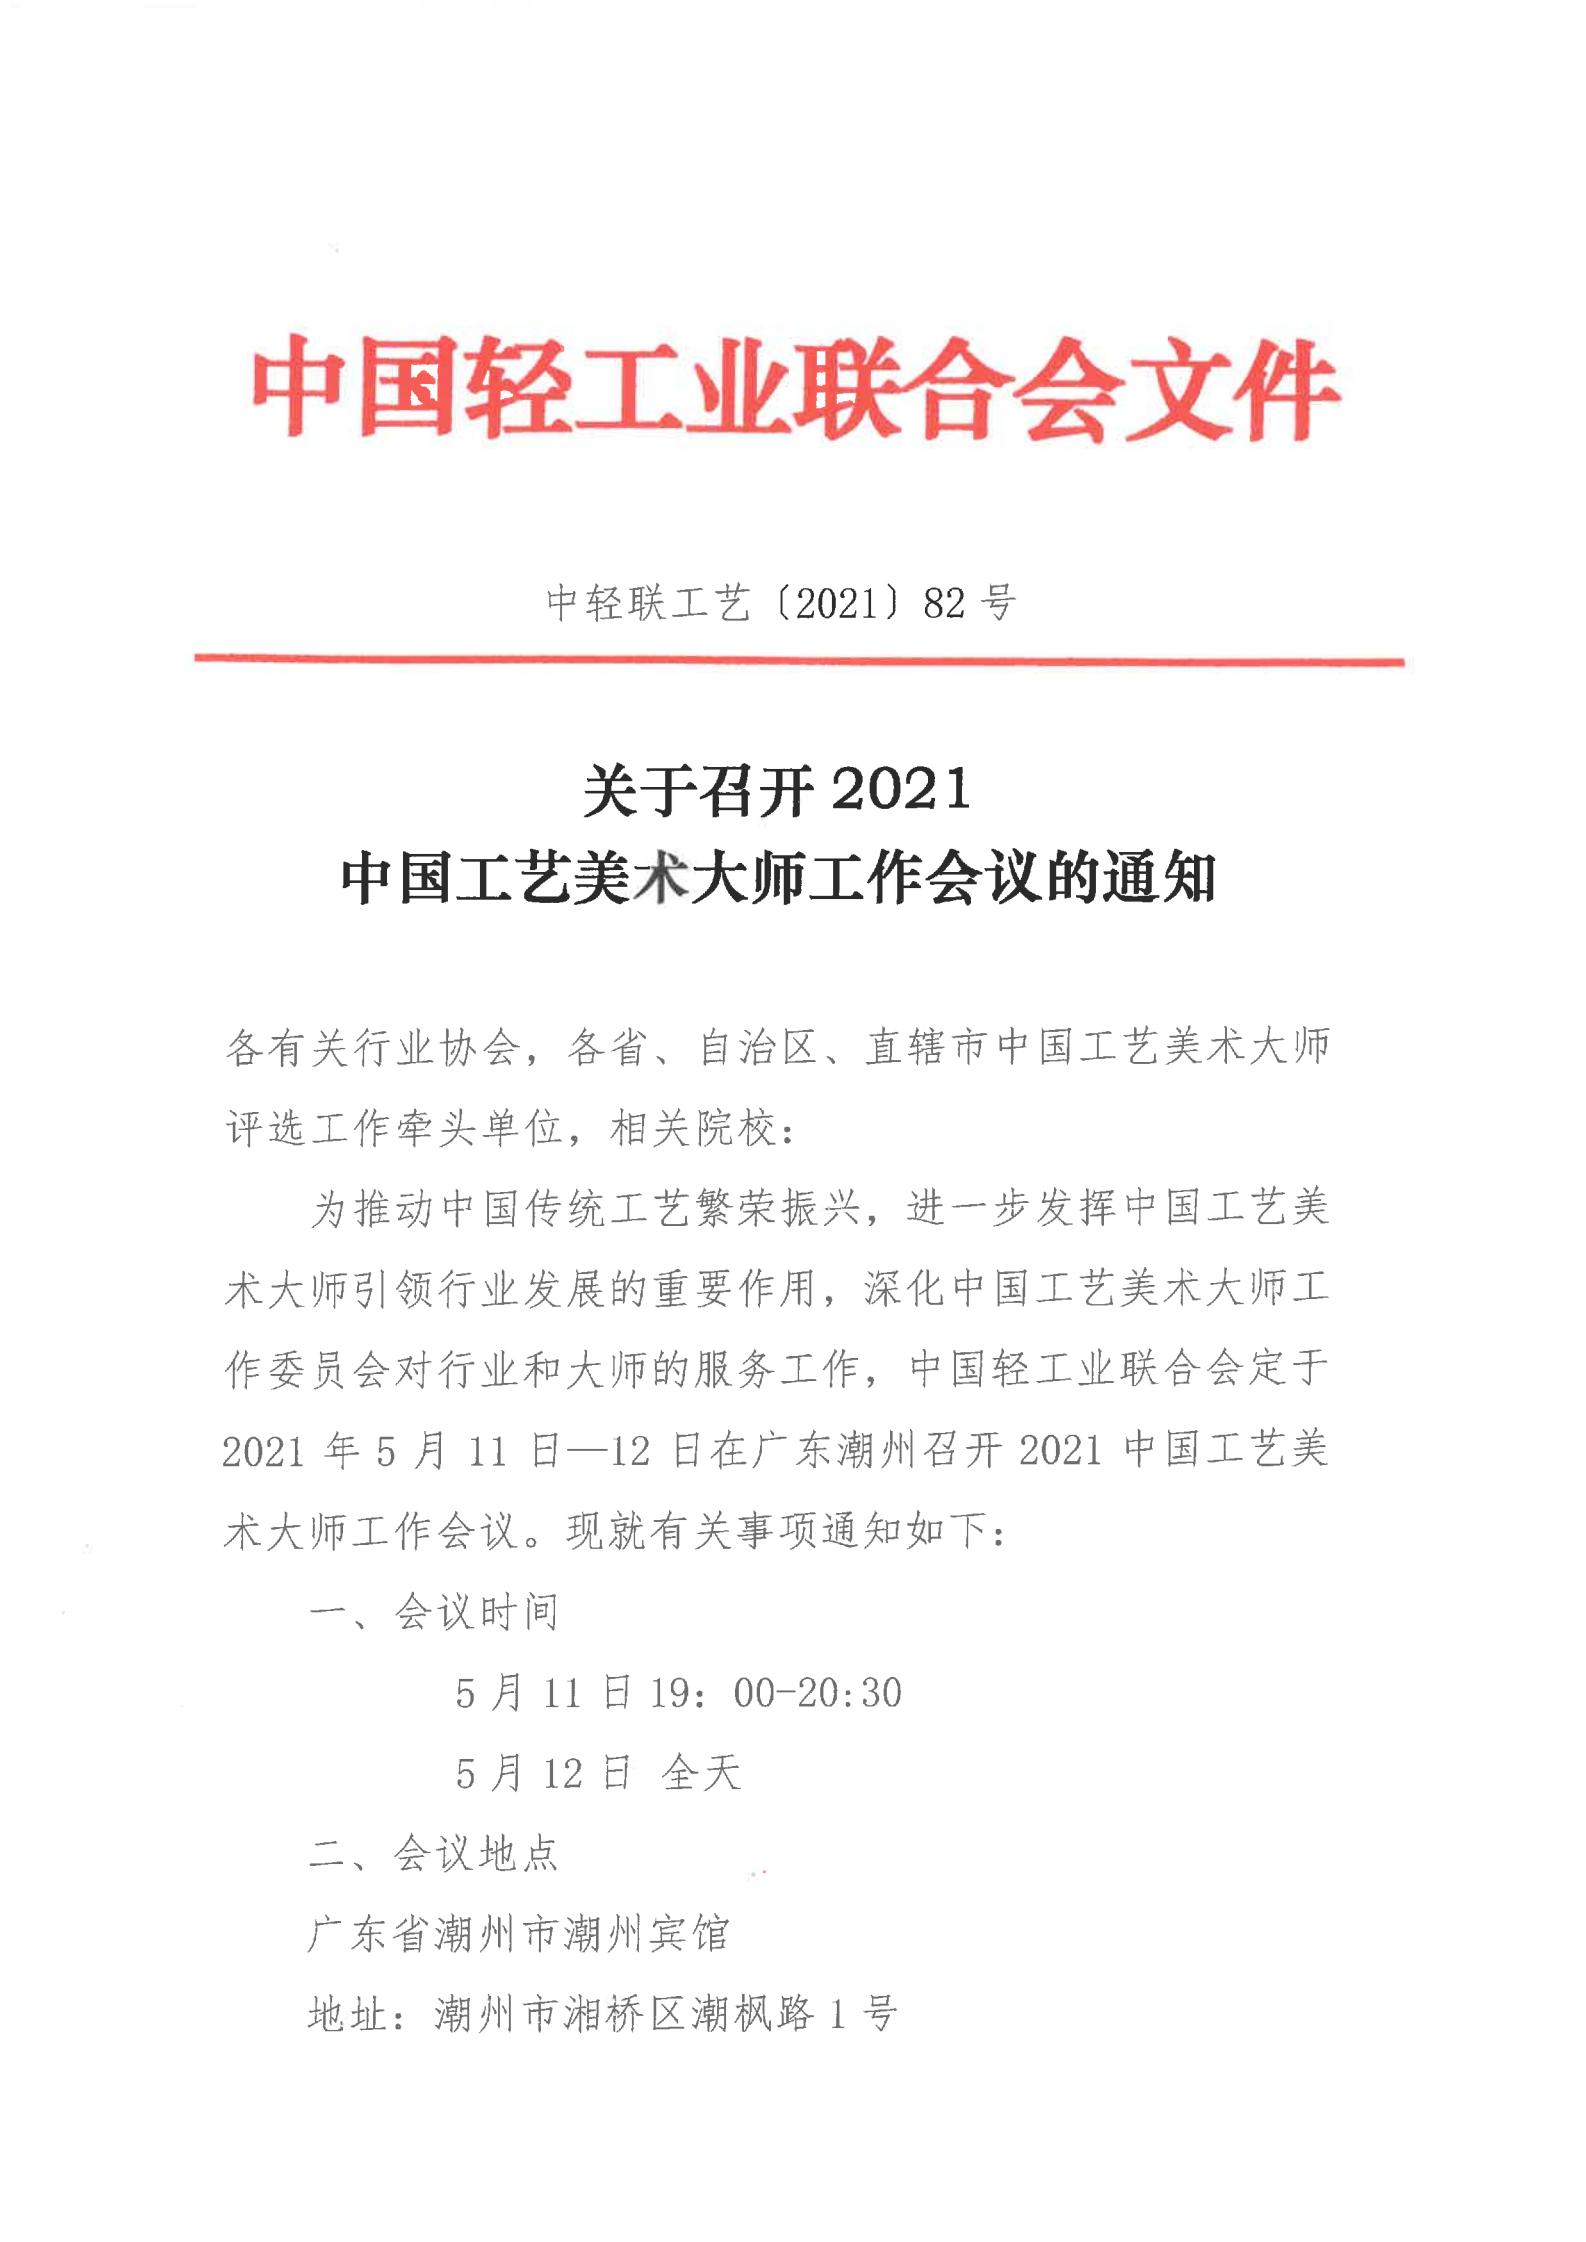 关于召开2021中国工艺美术大师工作会议的通知（各有关协会、牵头单位、院校）_00.jpg